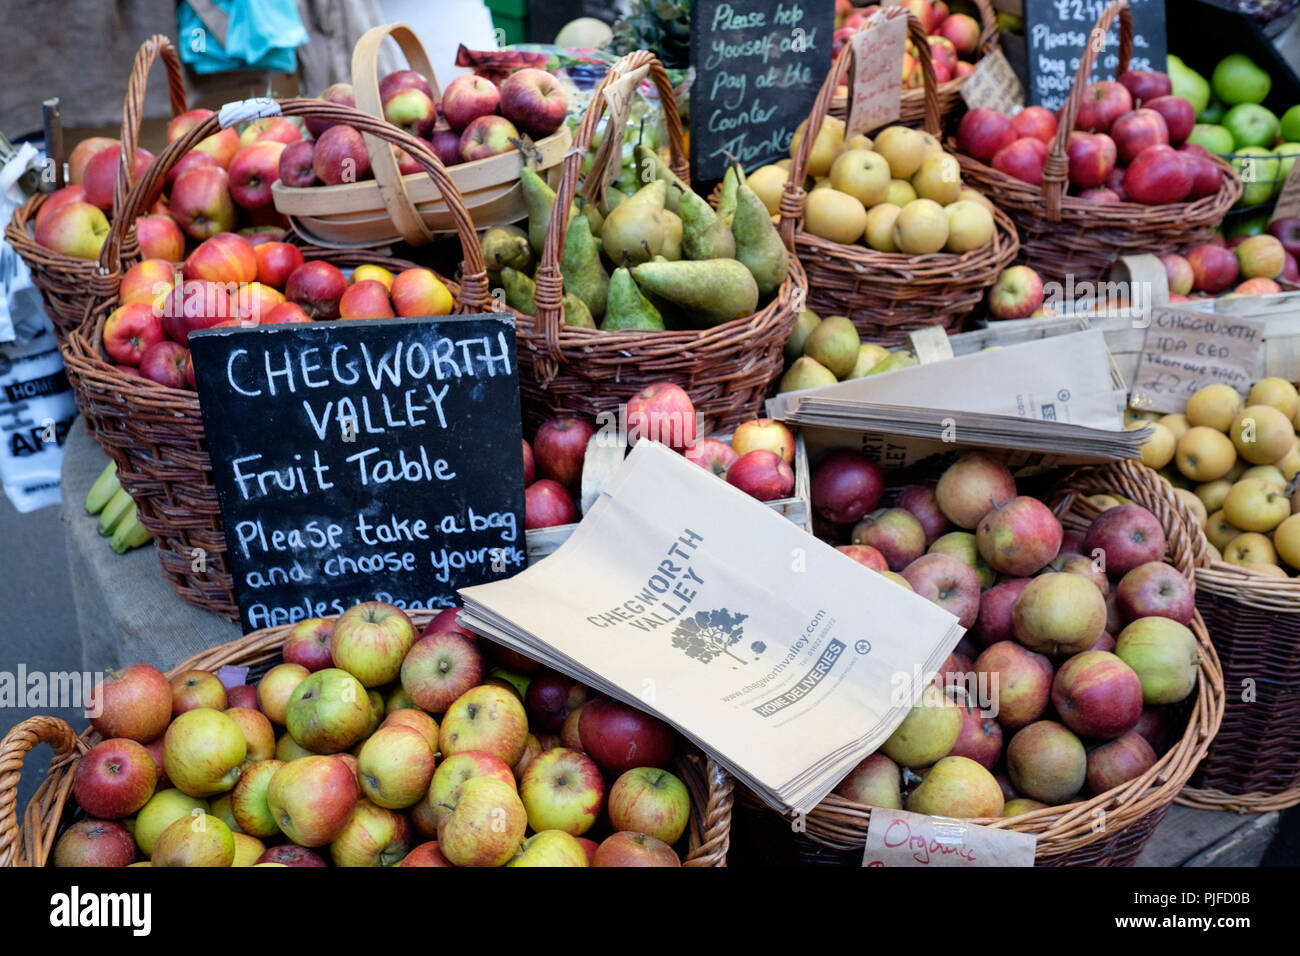 Cueillir vos propres fruits tableau à Chegworth Valley market stall à Borough Market, Londres, Angleterre. Banque D'Images